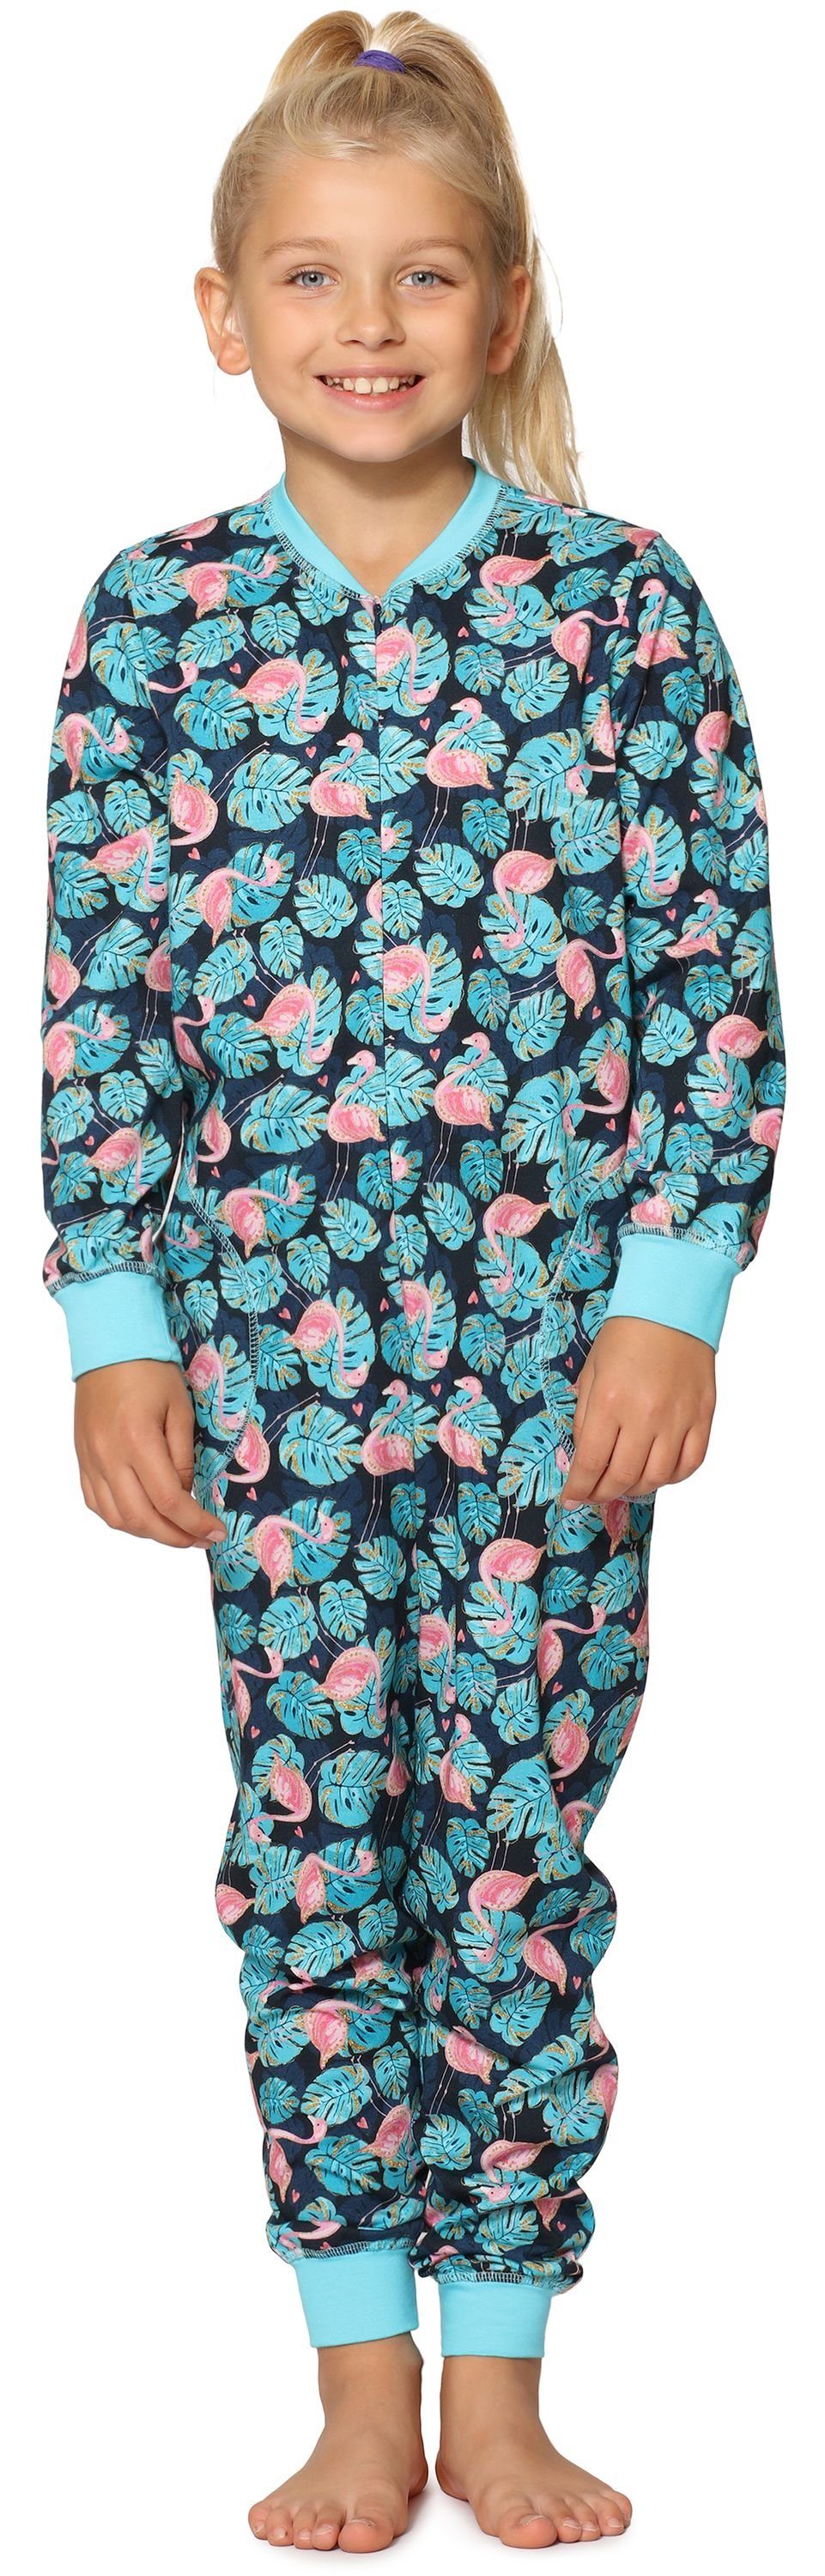 Mädchen Schlafanzug Türkis Style Merry Flamingos MS10-186 Jumpsuit Schlafanzug